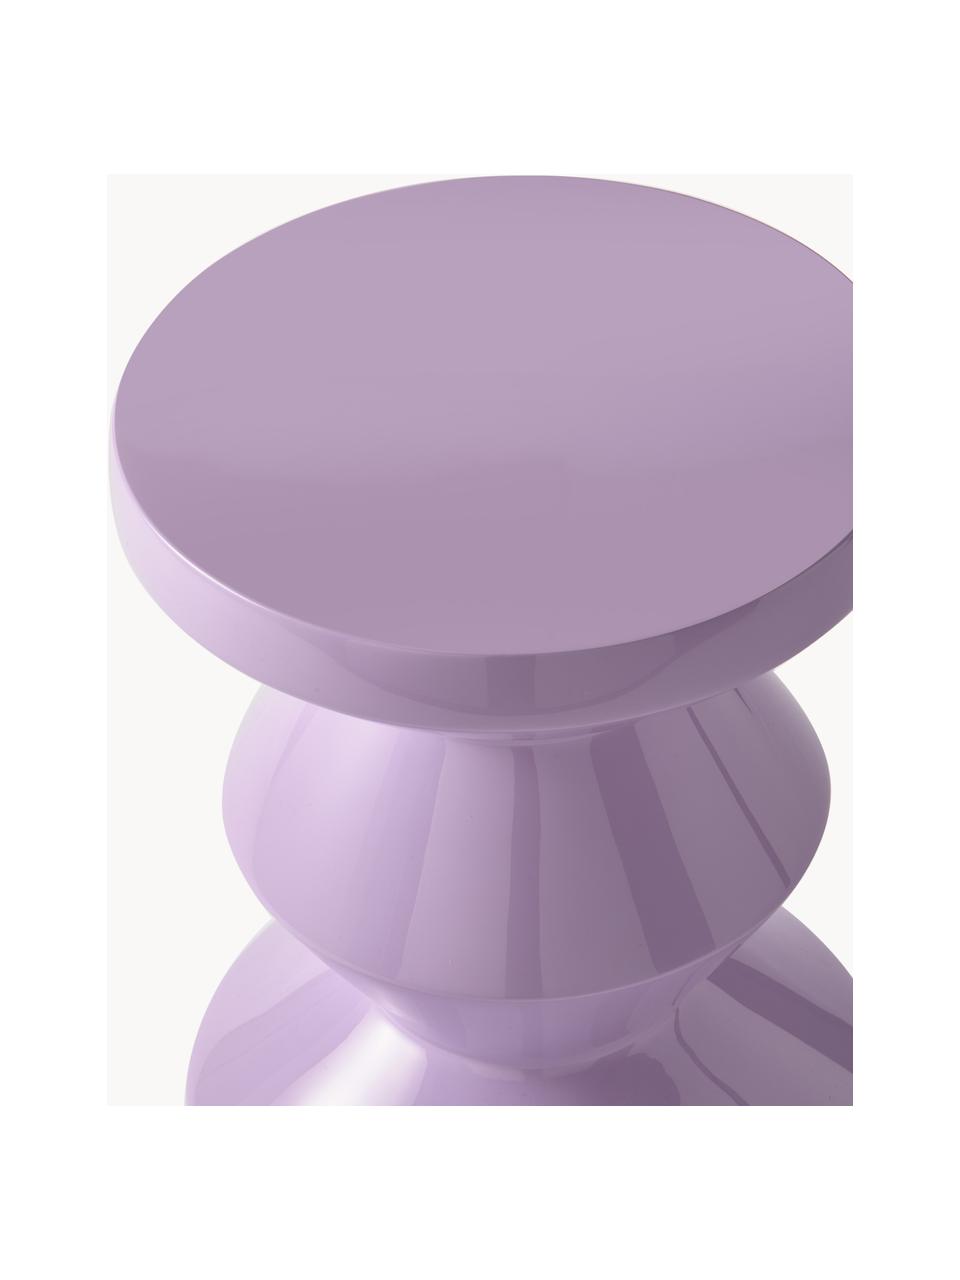 Runder Beistelltisch Zig Zag, Kunststoff, lackiert, Lavendel, Ø 36 x H 46 cm